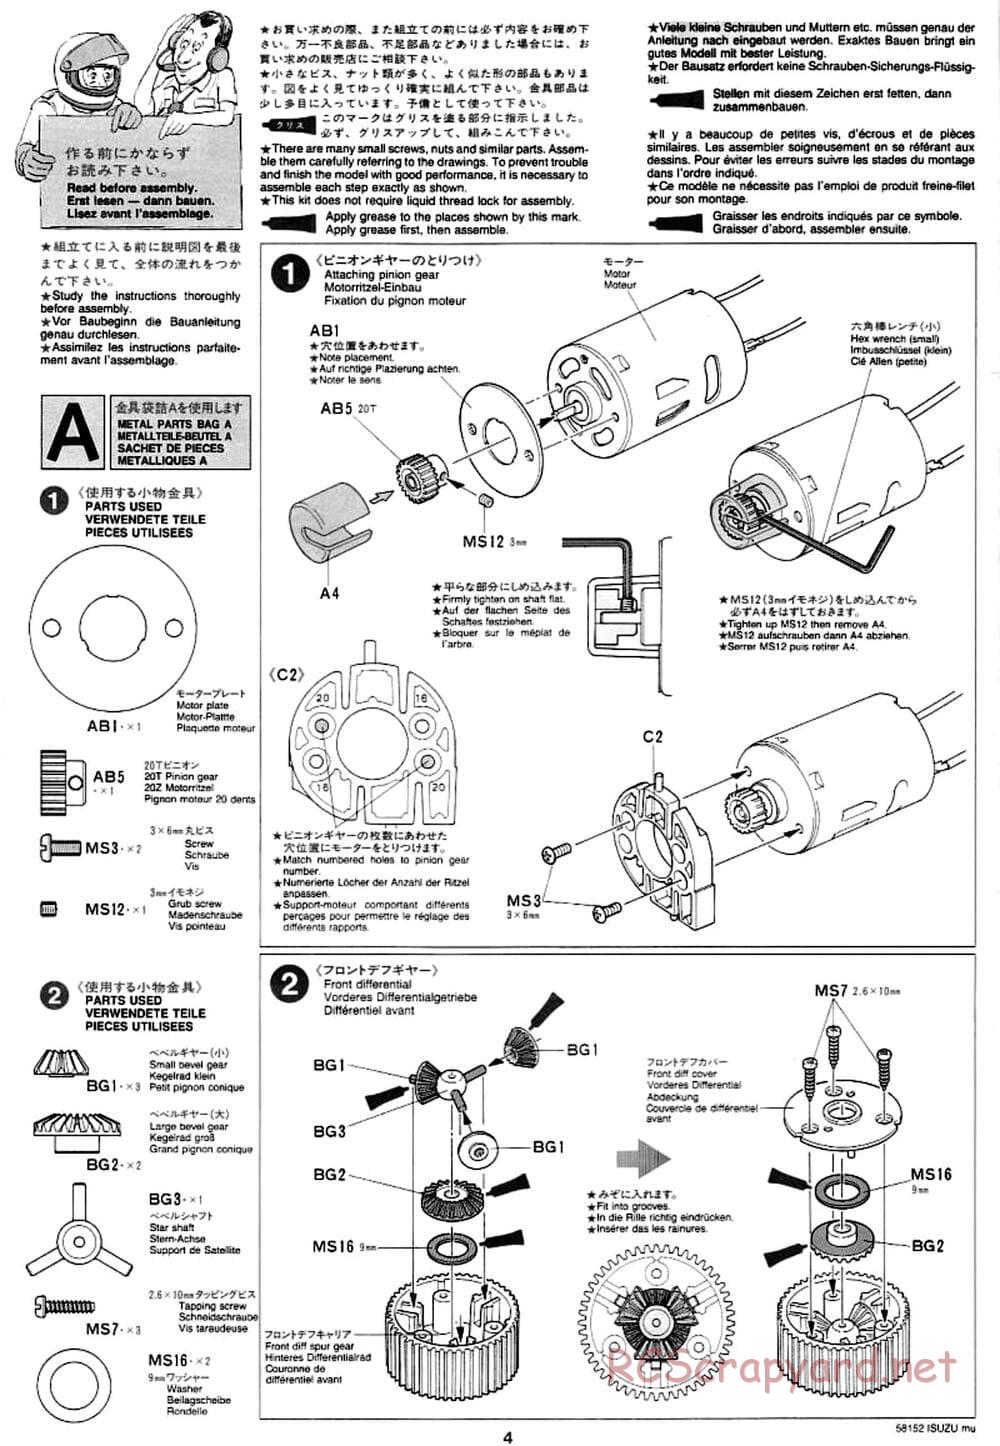 Tamiya - Isuzu Mu - CC-01 Chassis - Manual - Page 4